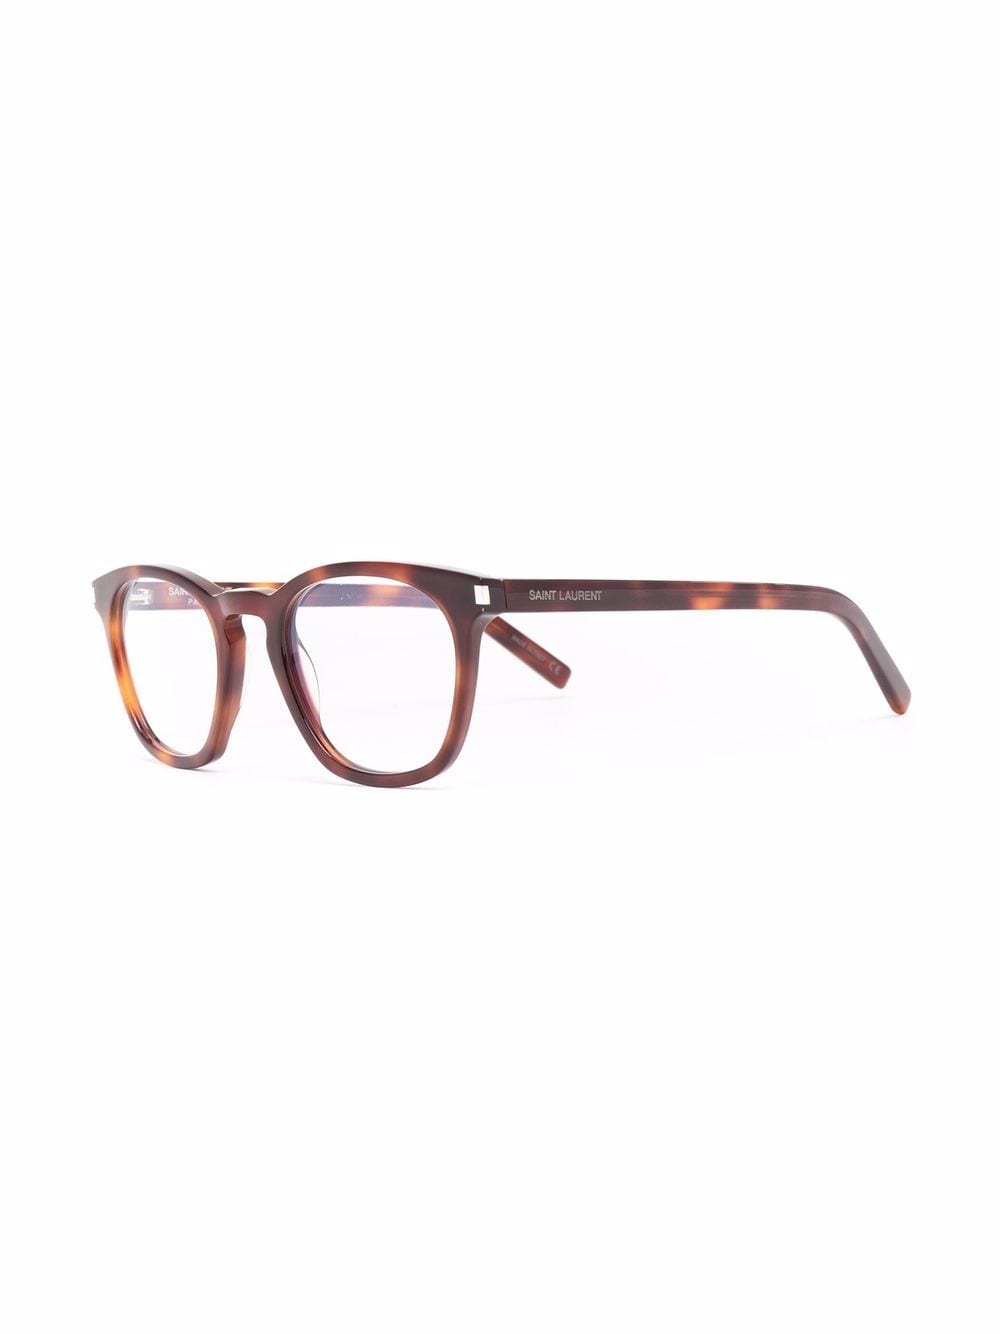 Saint Laurent Eyewear SL 28 OPT bril met D-montuur - Bruin